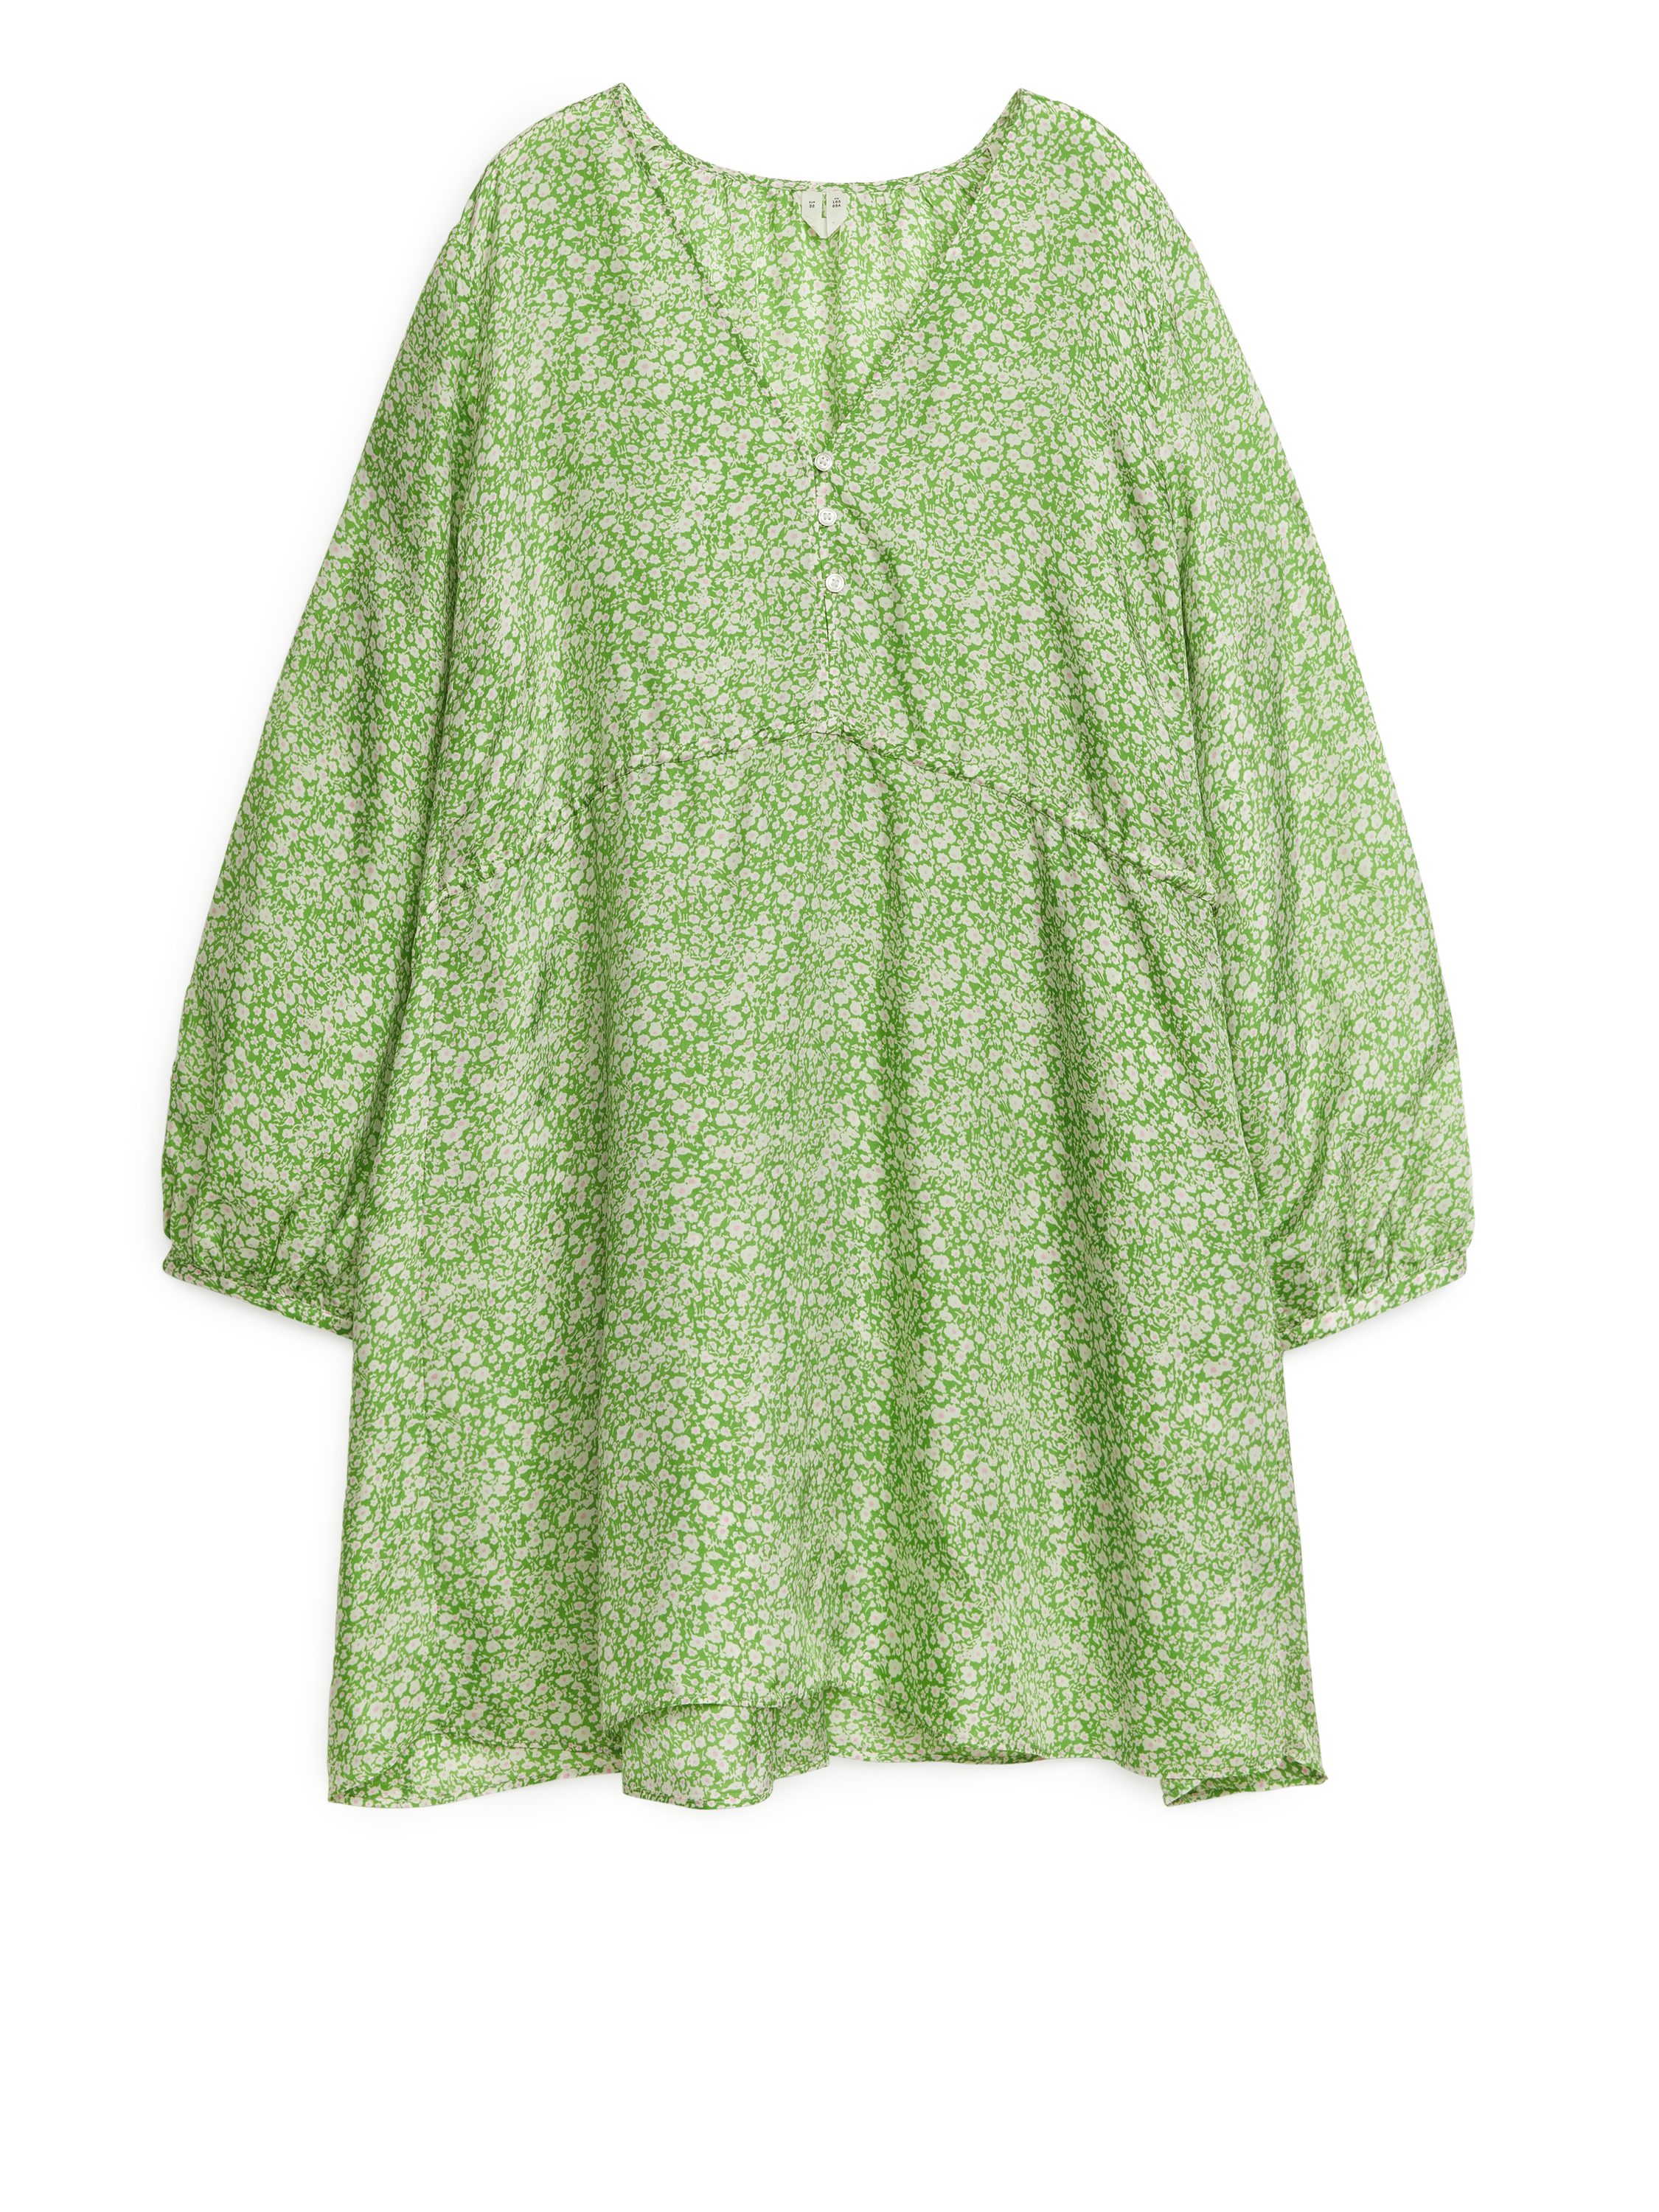 Billede af Arket A-formet Minikjole Grøn/hvid, Hverdagskjoler. Farve: Green/white I størrelse 44